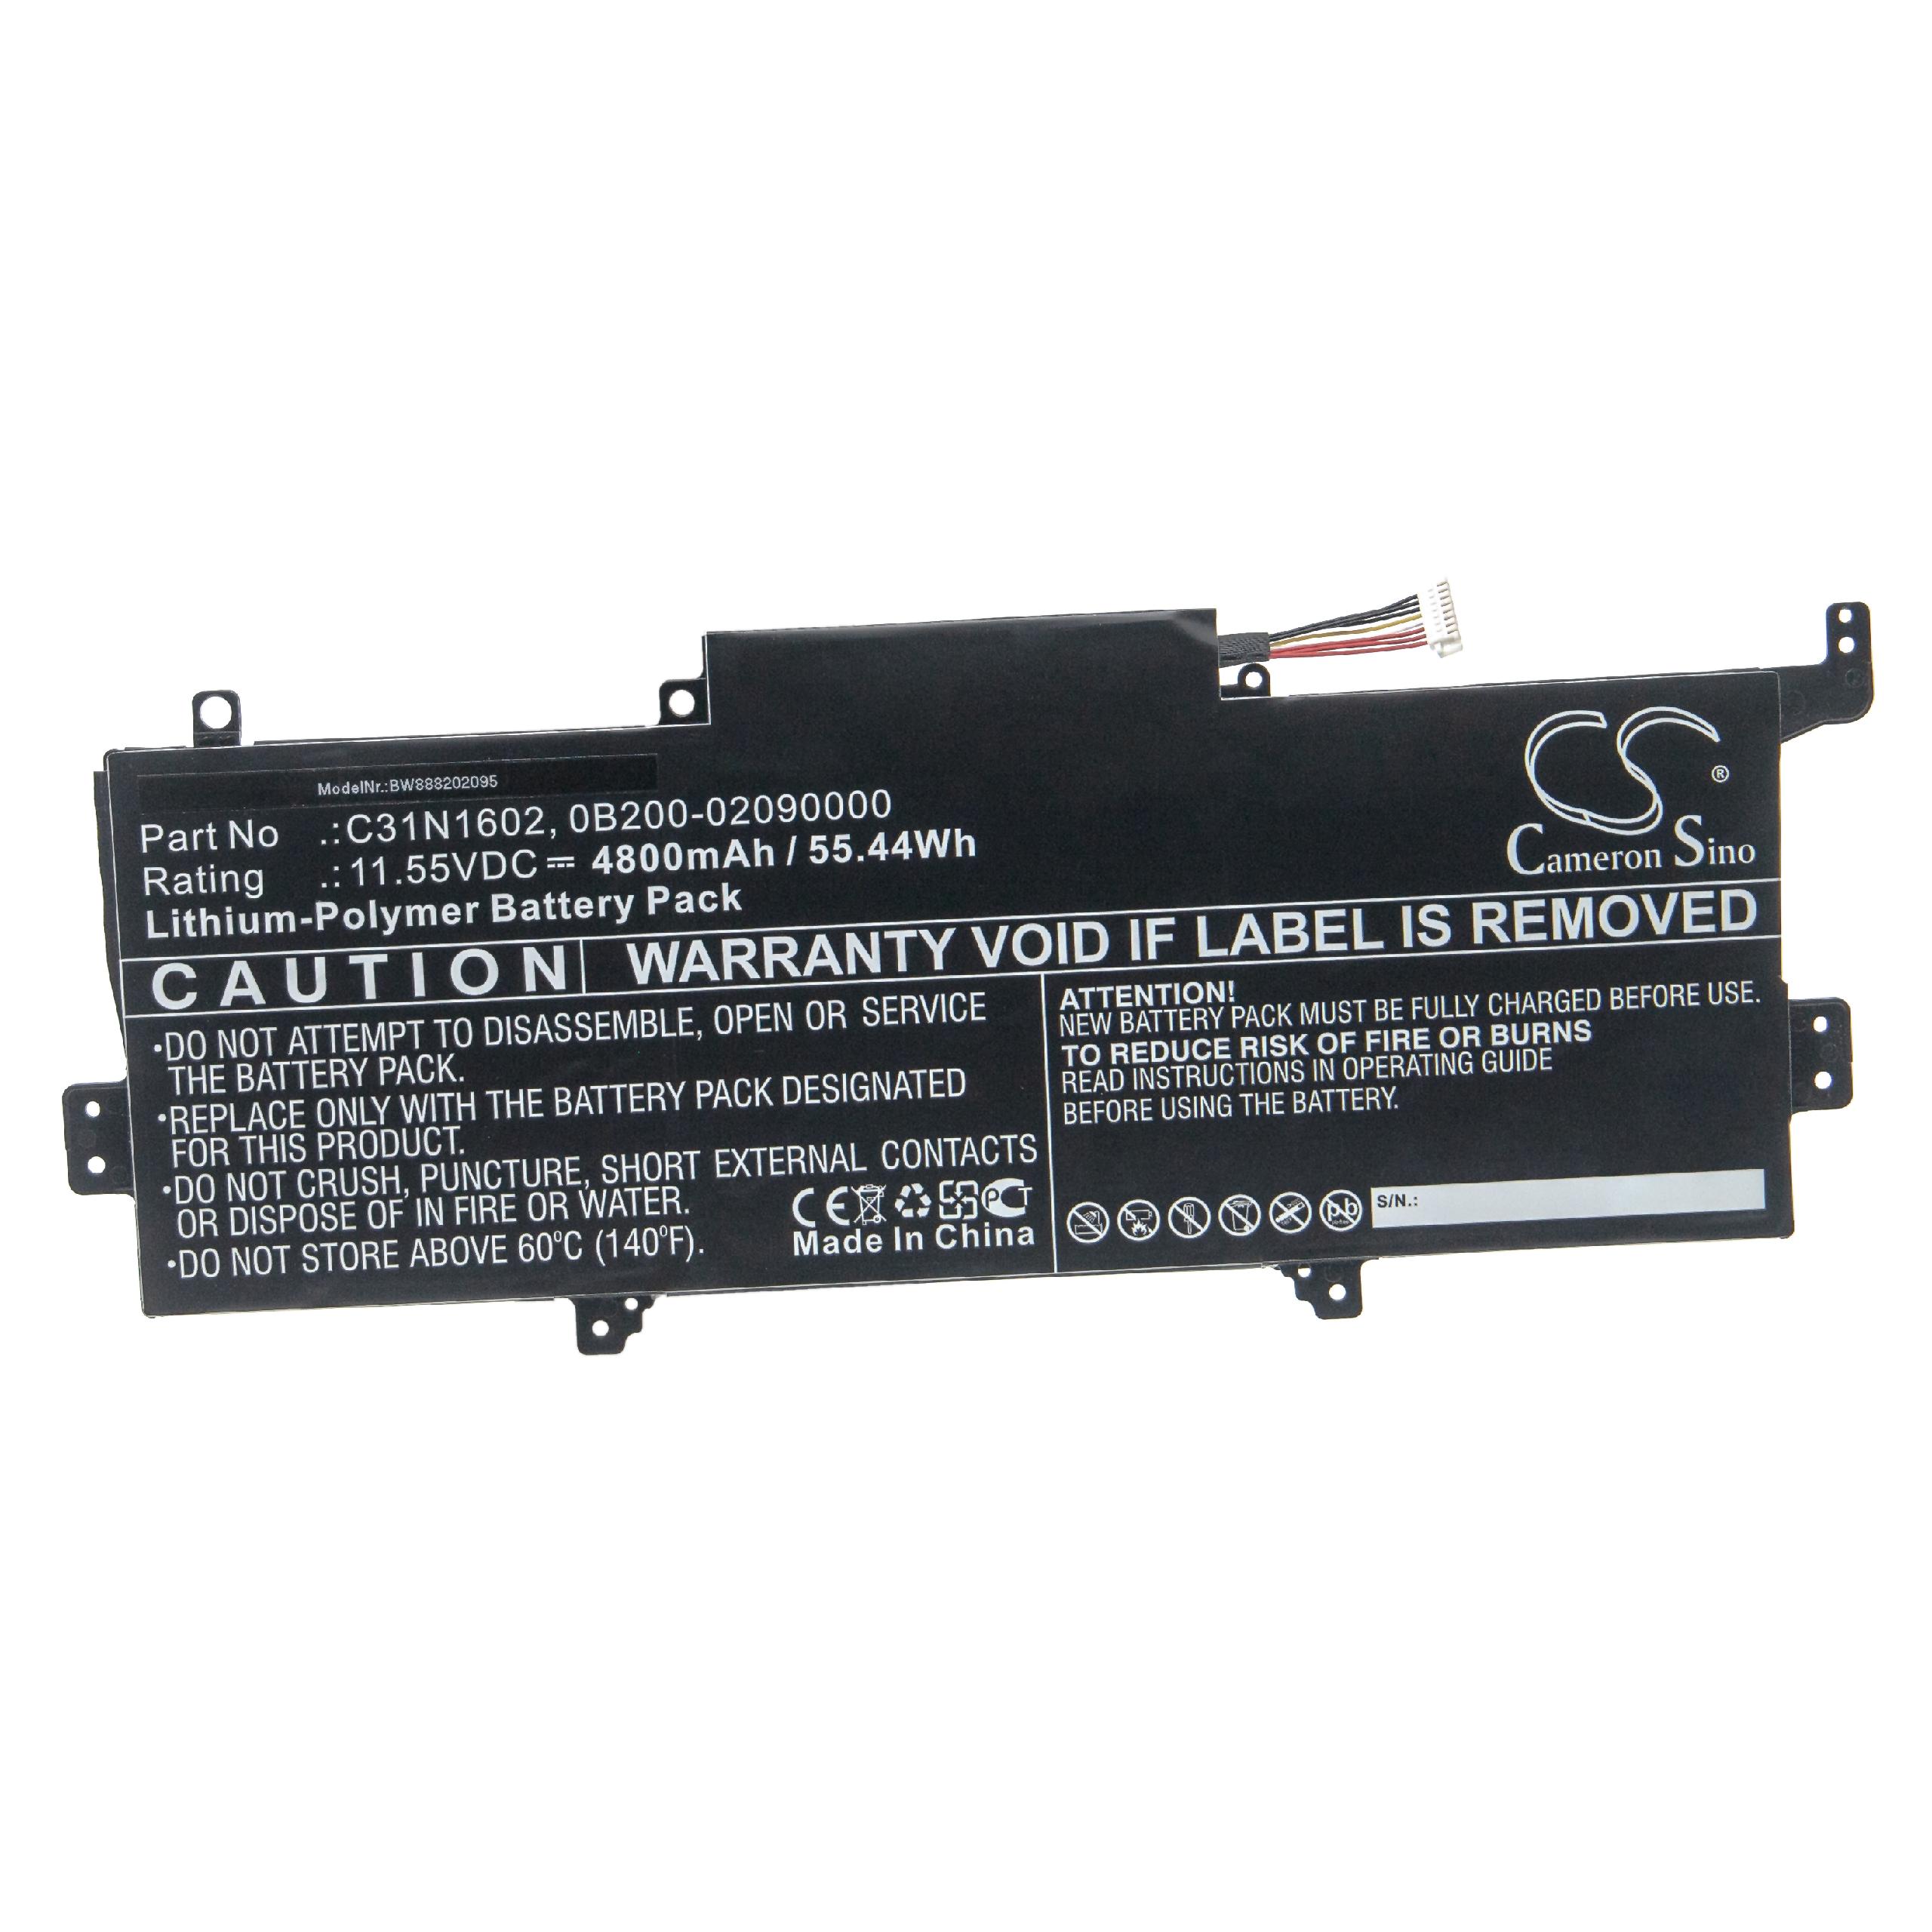 Batterie remplace Asus C31N1602, 0B200-02090000 pour ordinateur portable - 4800mAh 11,55V Li-polymère, noir